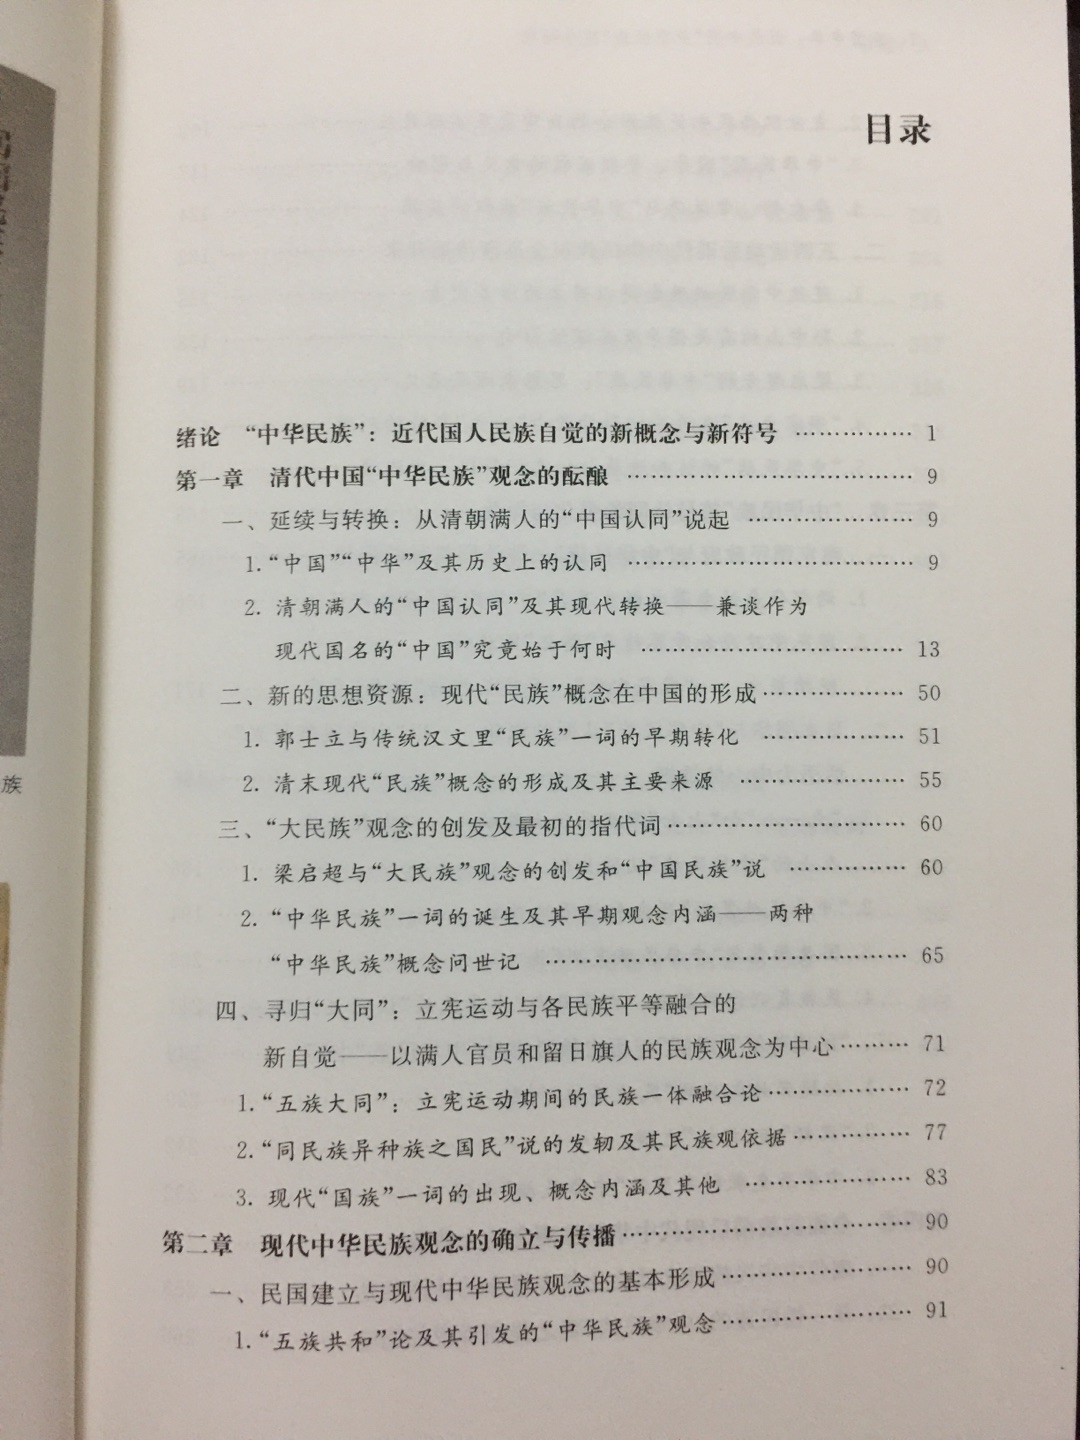 书很不错，研究中国民族问题很好的参考资料